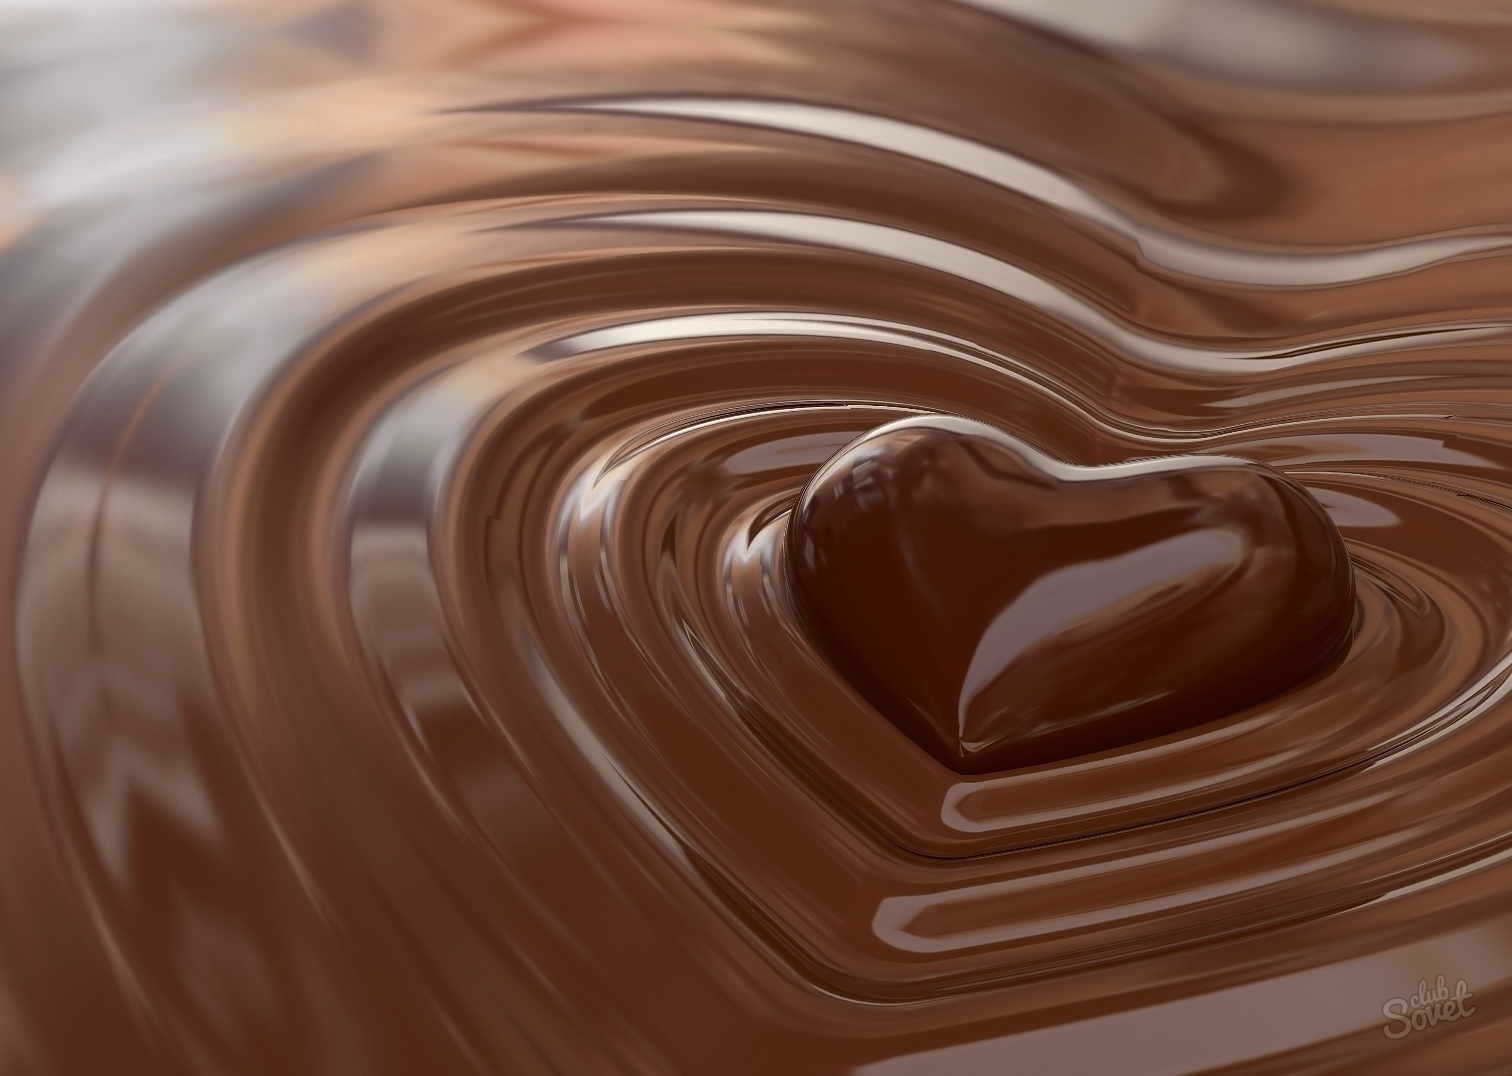 Comment faire fondre le chocolat au micro-ondes